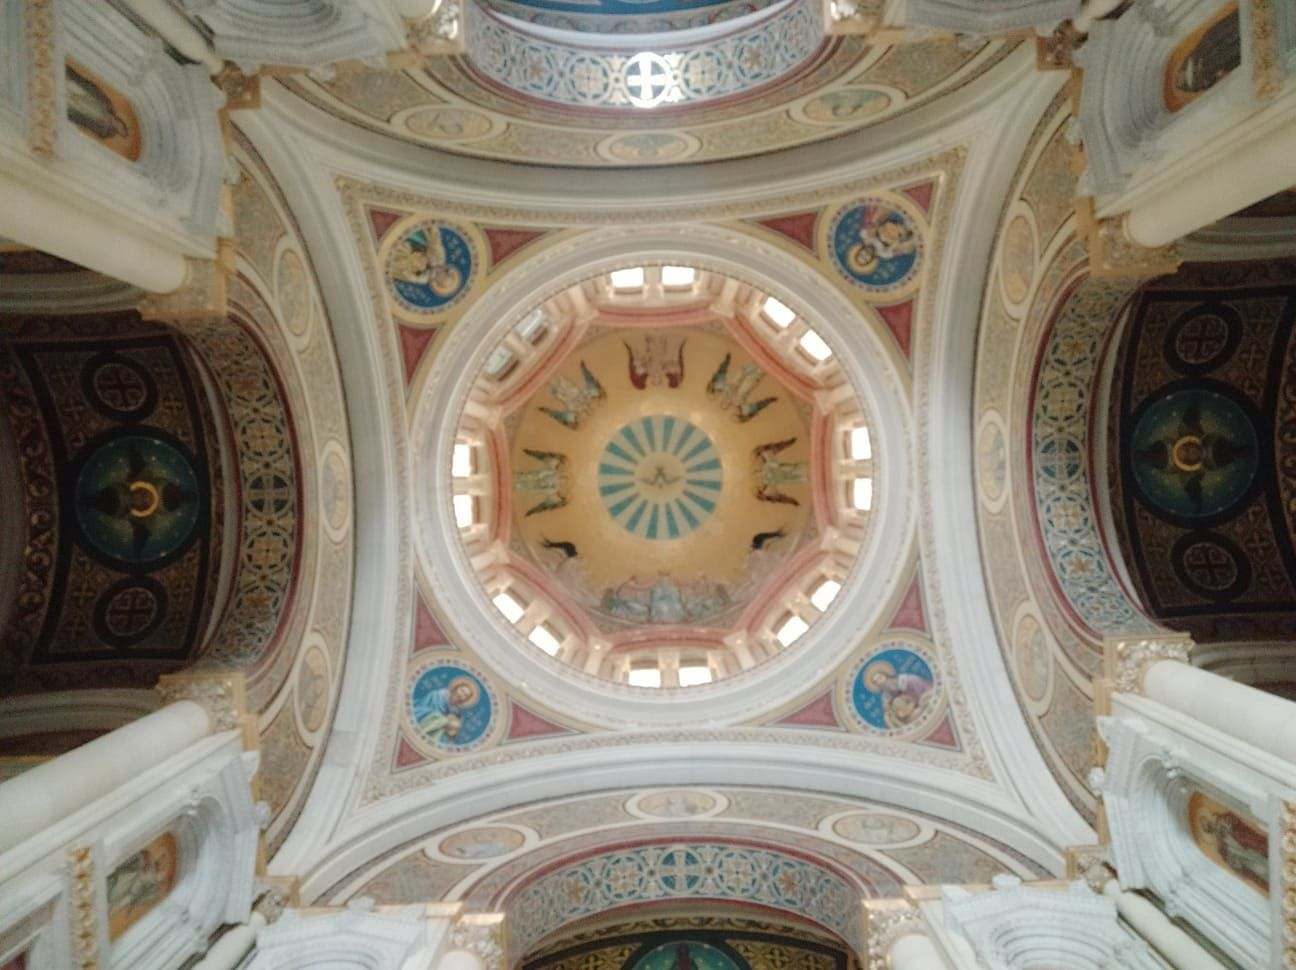 Los mosaicos de la cúpula son una obra de arte del mosaico.